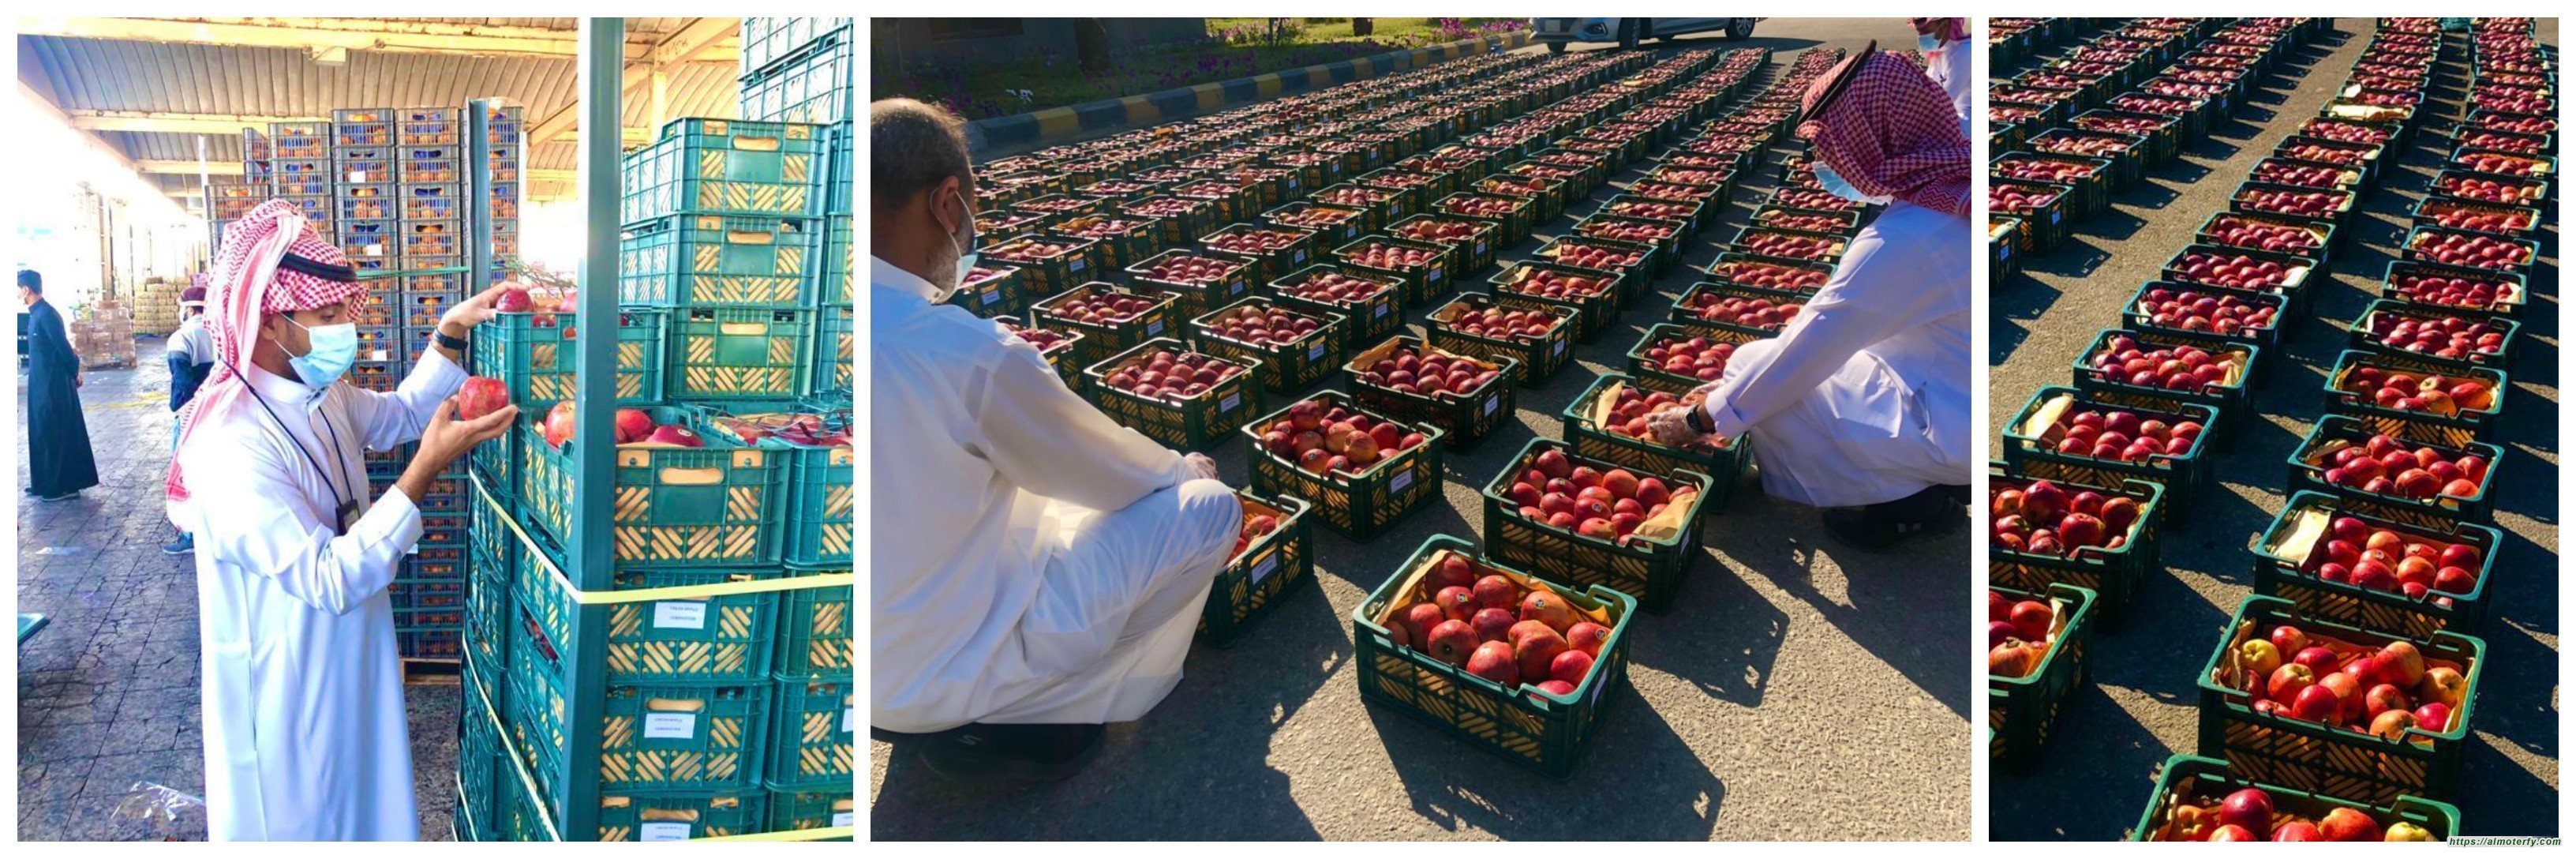 امانة الشرقية ظبط طنين من فاكهة التفاح في سوق الخضار والفواكه  بالدمام ظهرت عليها علامات التلف قبل توزيعها